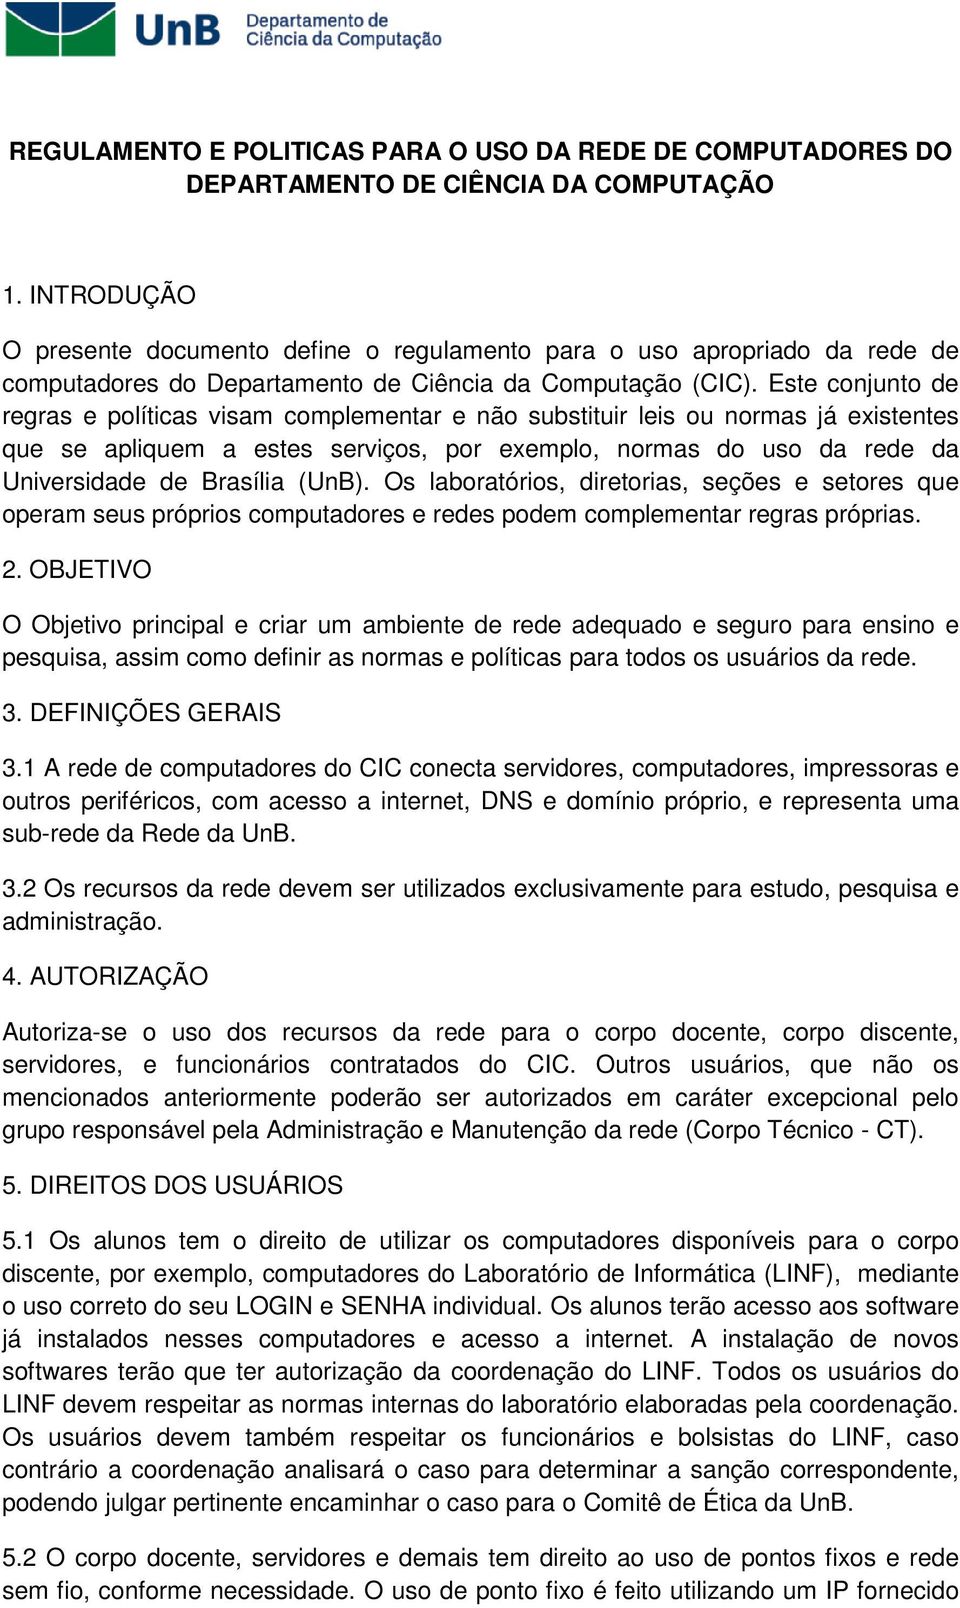 Este conjunto de regras e políticas visam complementar e não substituir leis ou normas já existentes que se apliquem a estes serviços, por exemplo, normas do uso da rede da Universidade de Brasília